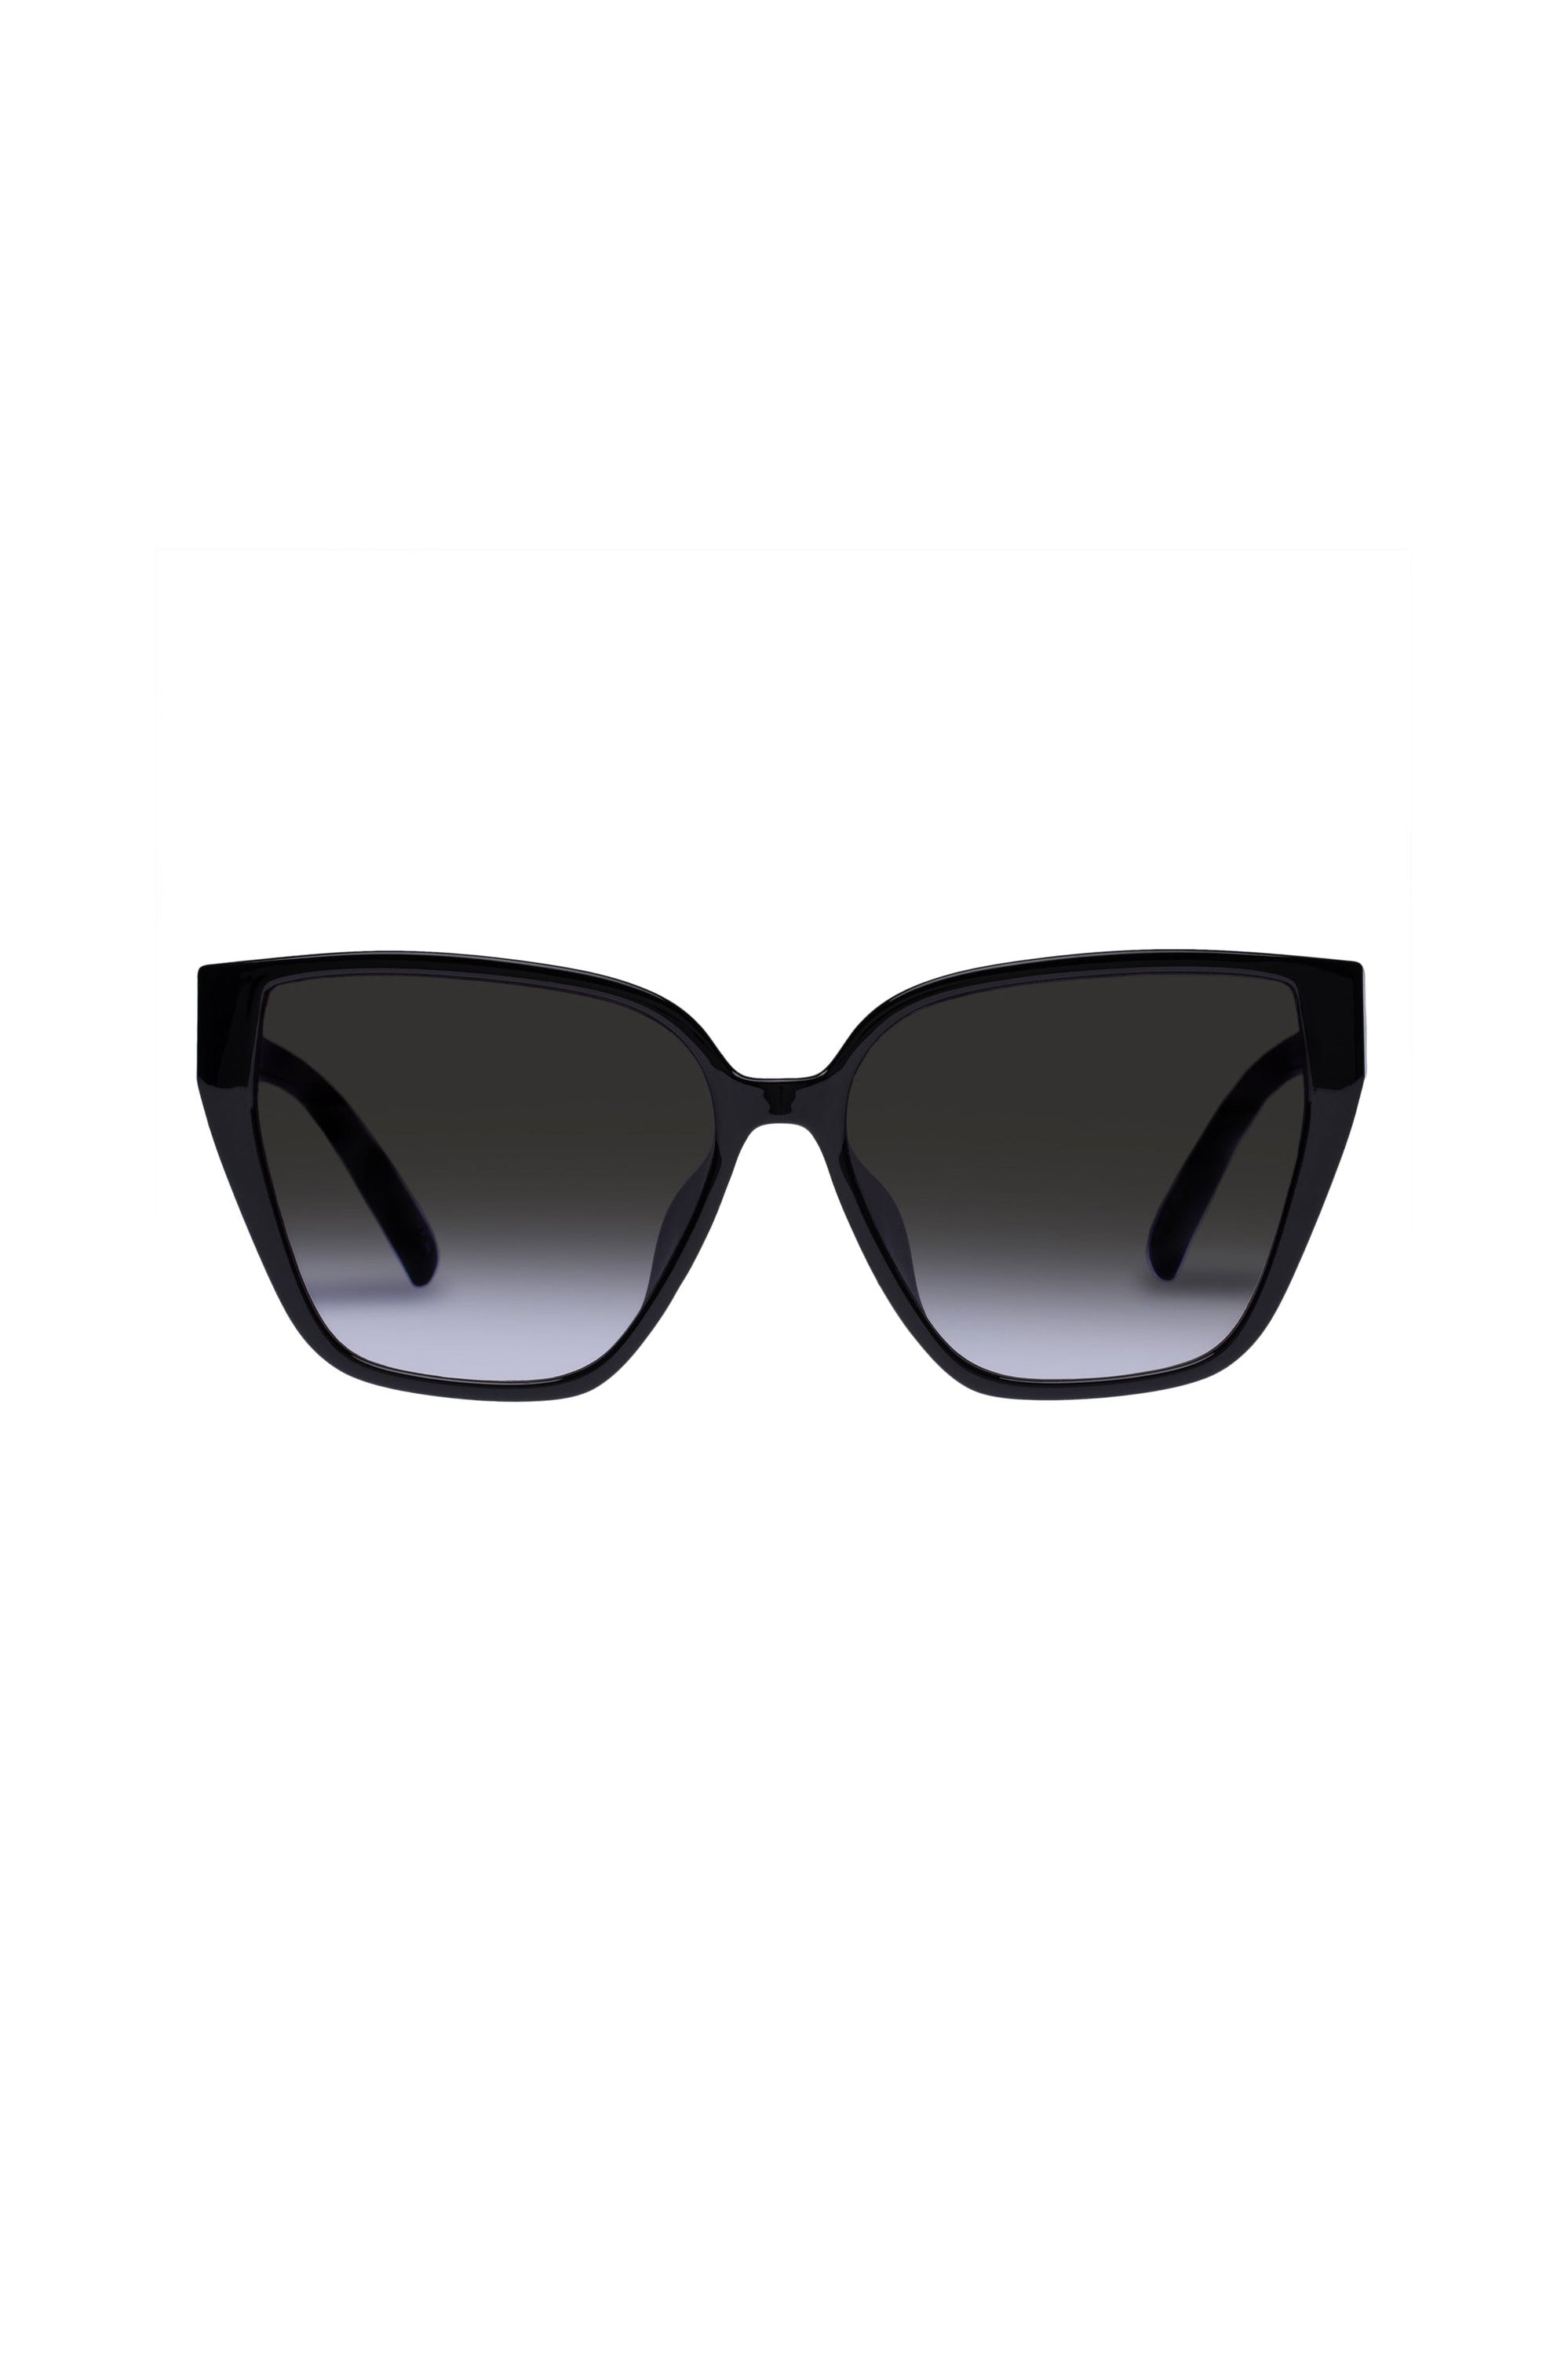 Fash-Hun Sunglasses - Shiny Black